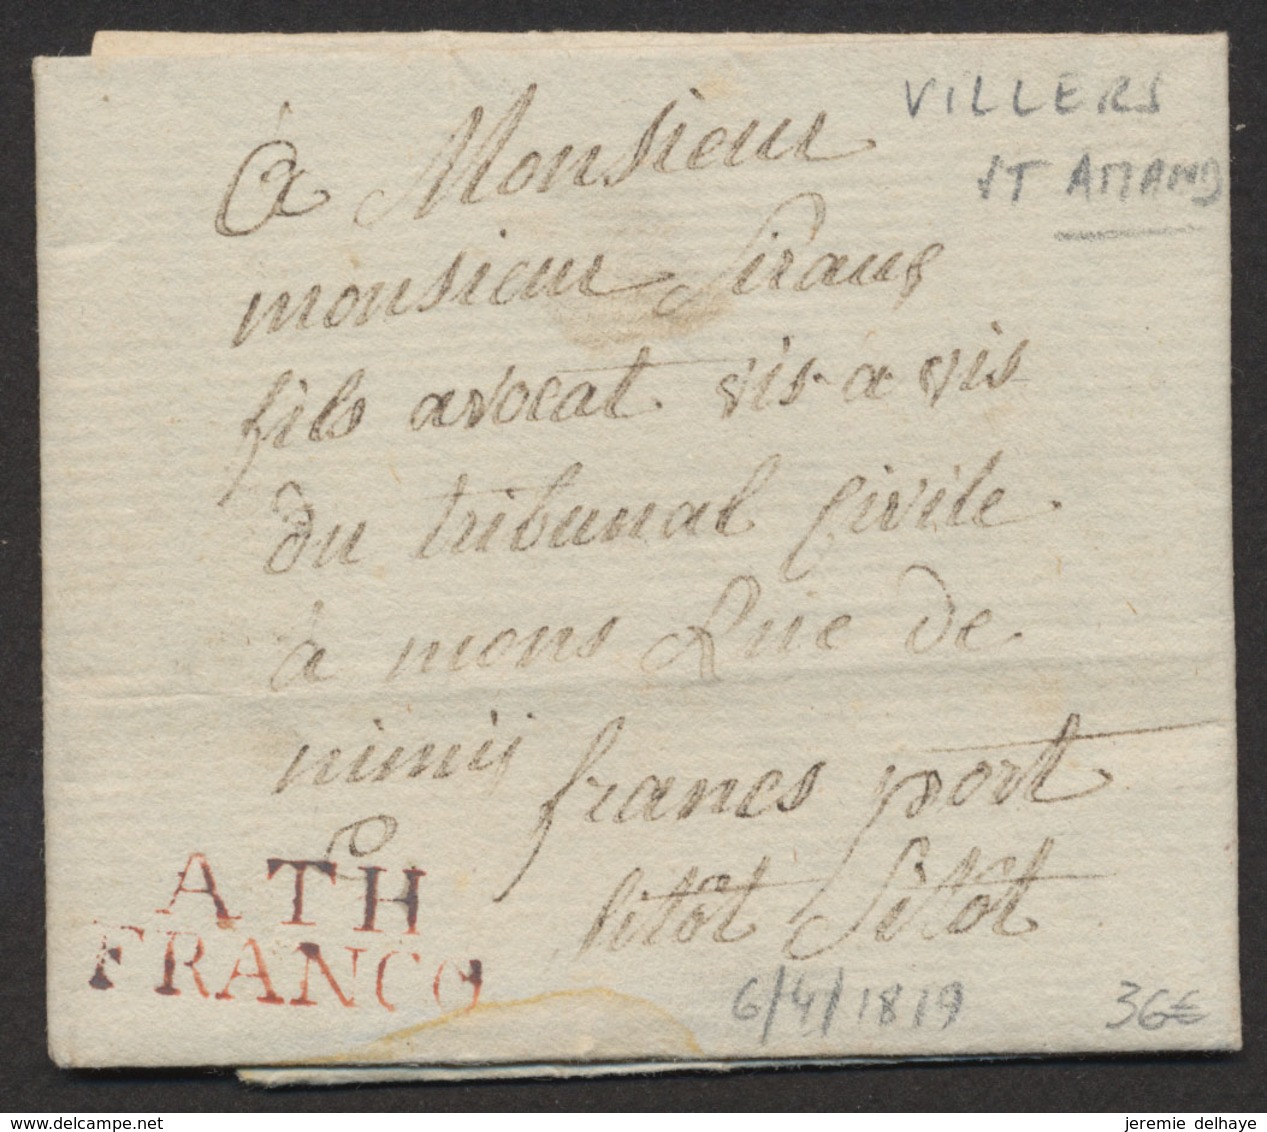 LAC Datée De Villers-St-Amand (1819) + Obl Linéaire ATH / FRANCO, Manusc. "Franc Port" Et "Sitot Sitot" > Mons - 1815-1830 (Hollandse Tijd)